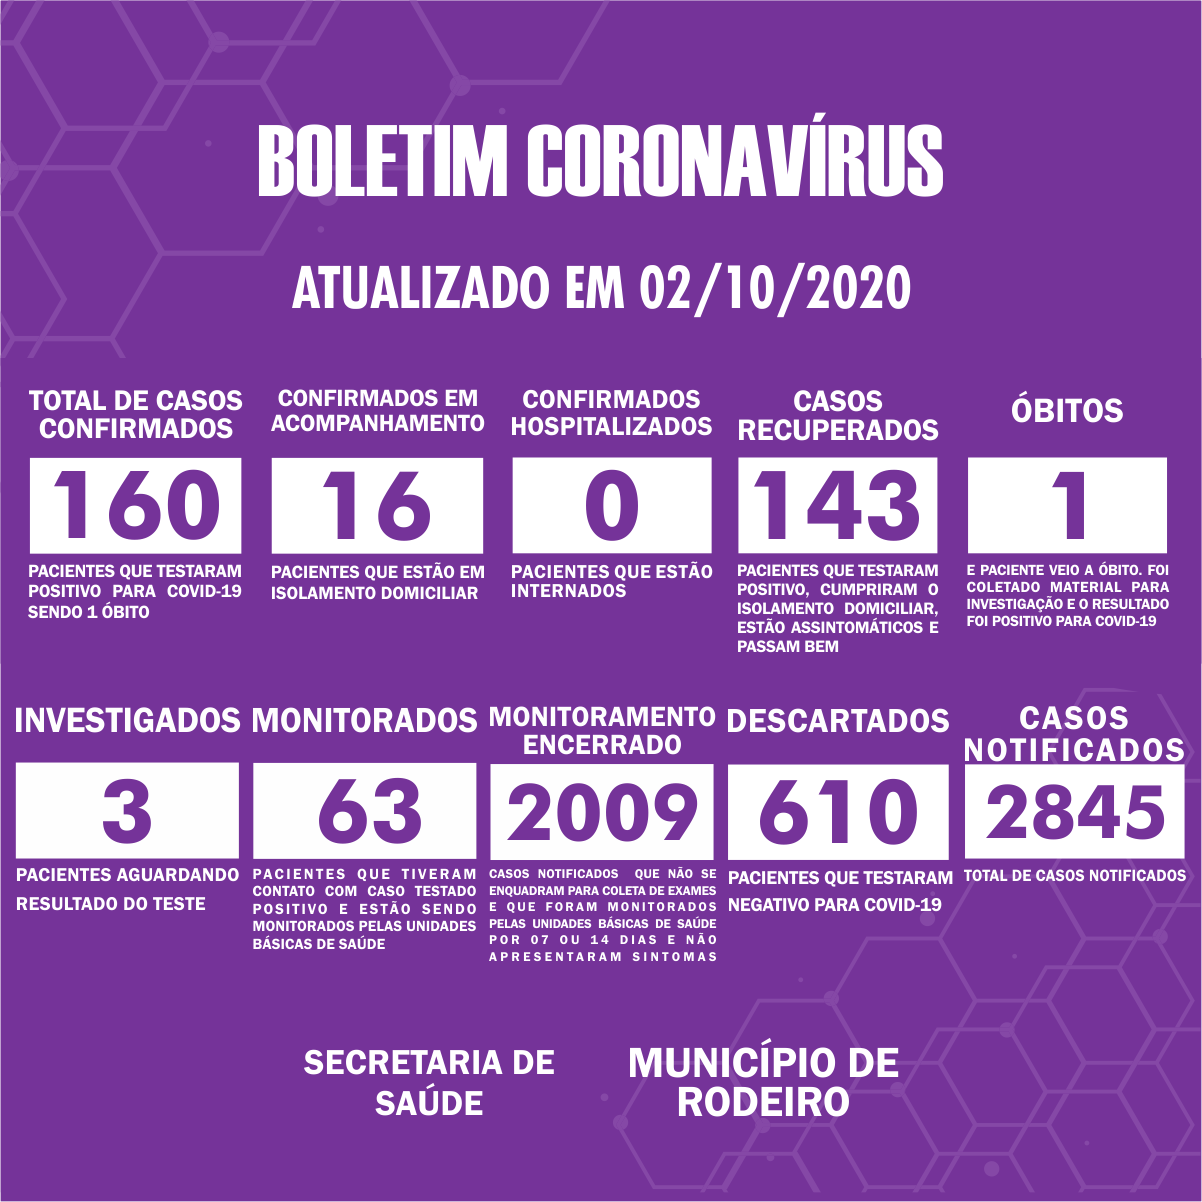 Boletim Epidemiológico do Município de Rodeiro sobre coronavírus, atualizado em 02/10/2020